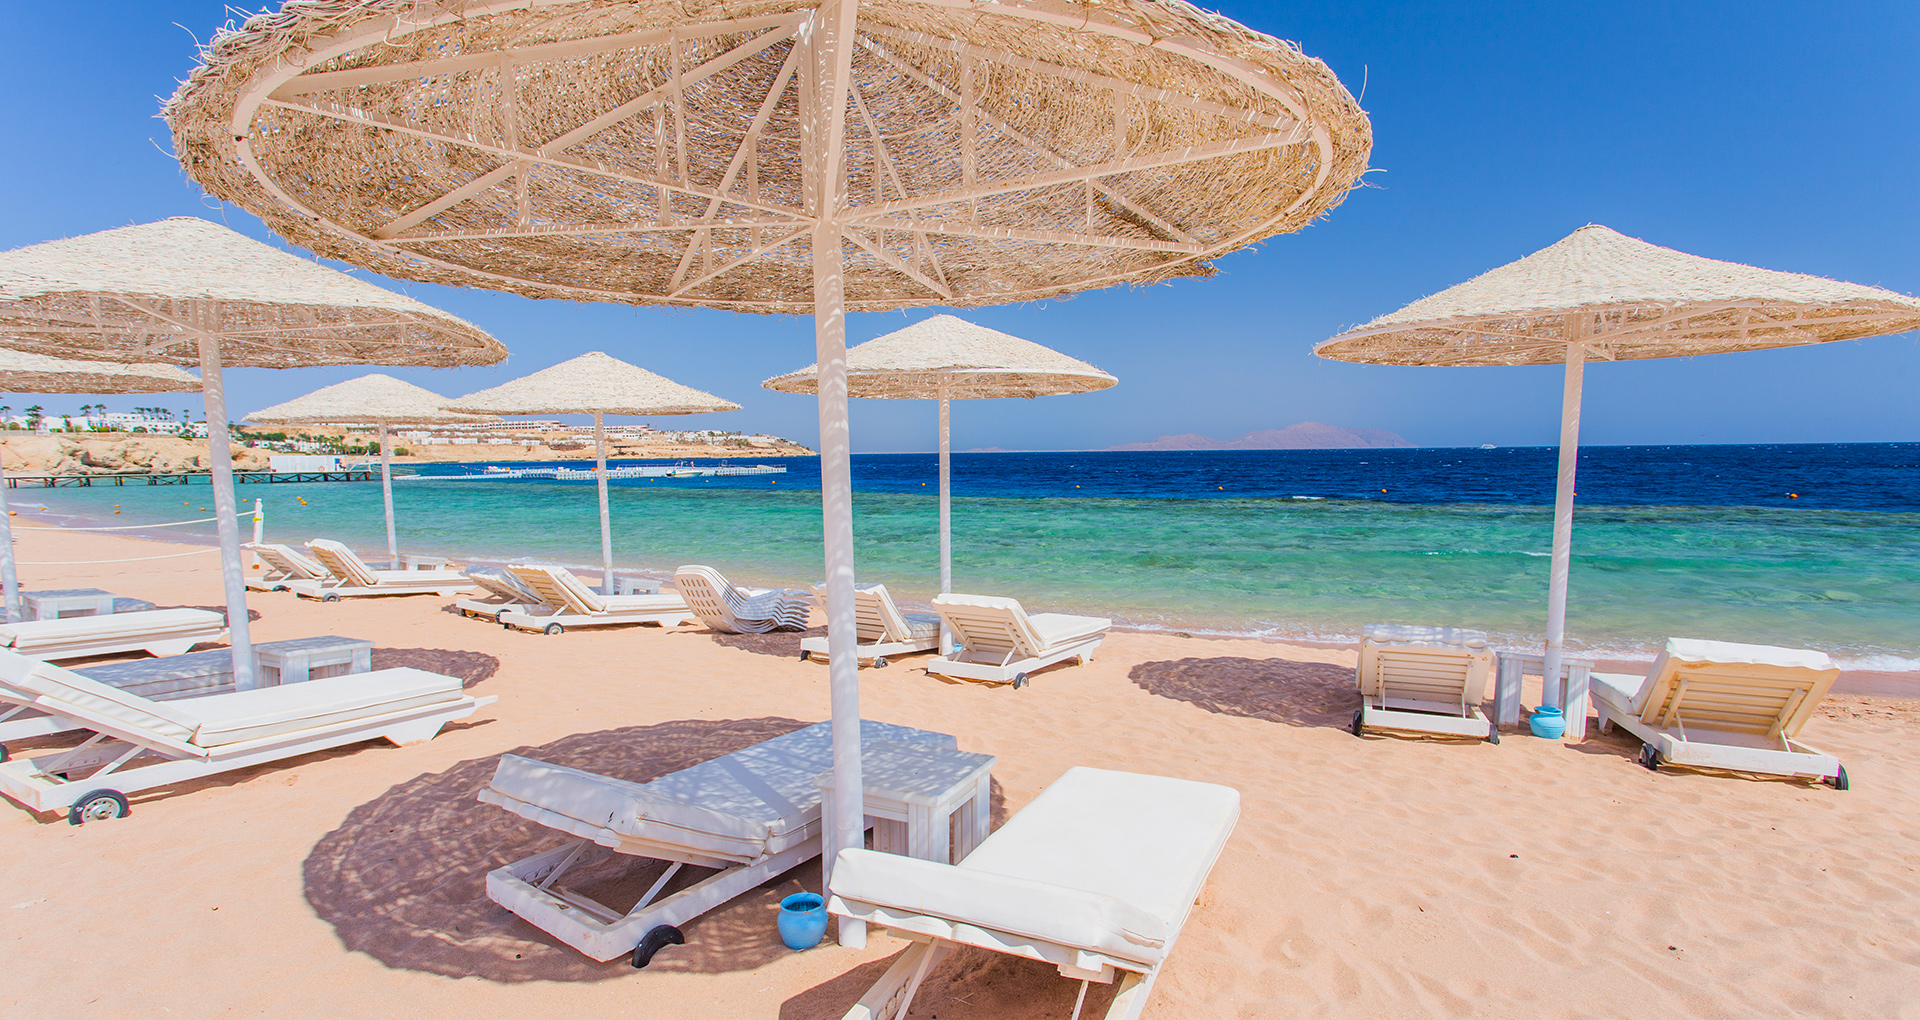 Heerlijke ligbedjes met parasols voor jezelf aan het strand van Turkije